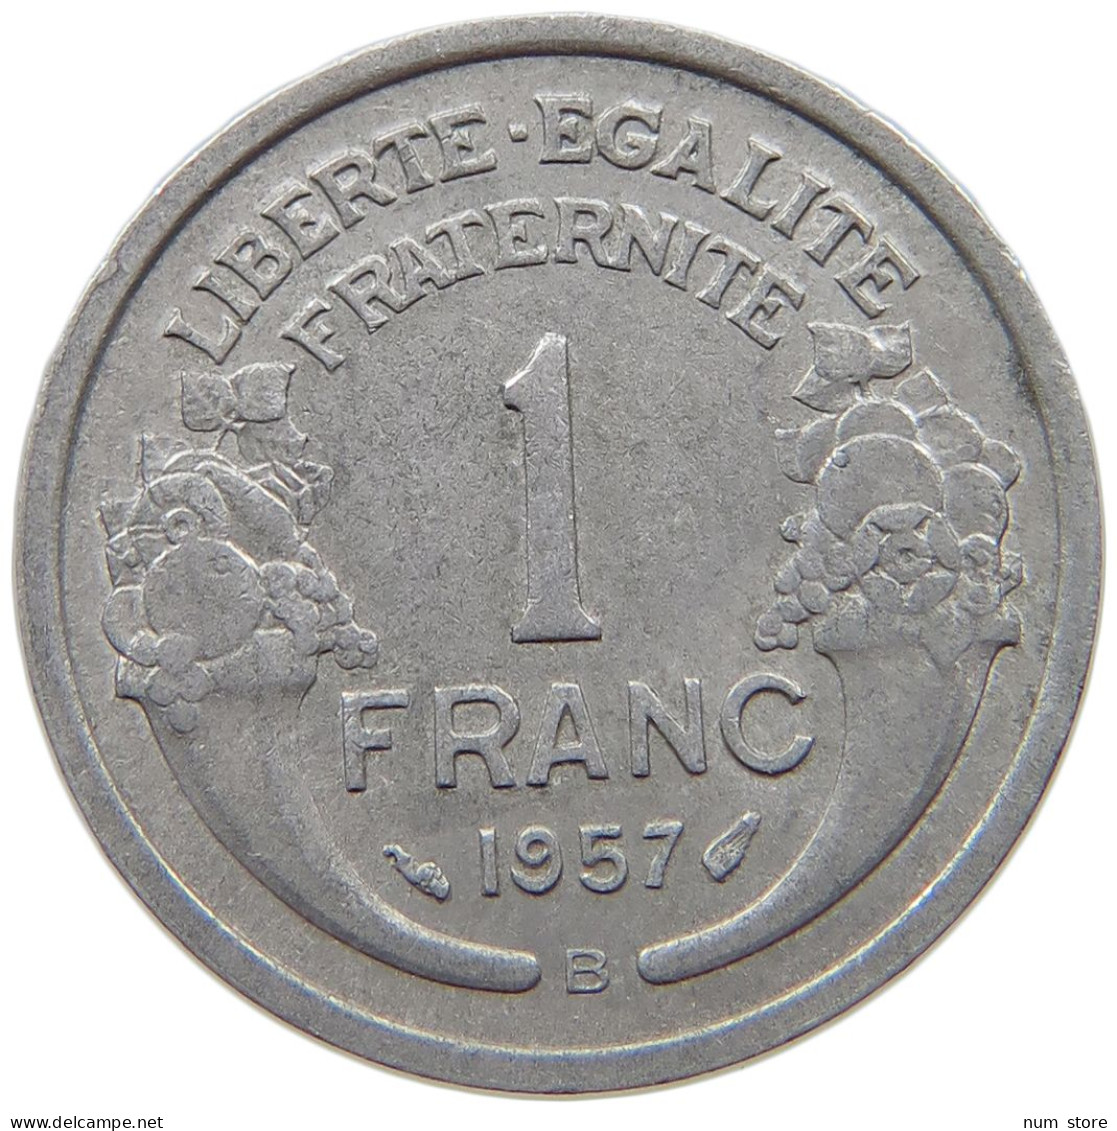 FRANCE 1 FRANC 1957 B #s069 0249 - 1 Franc